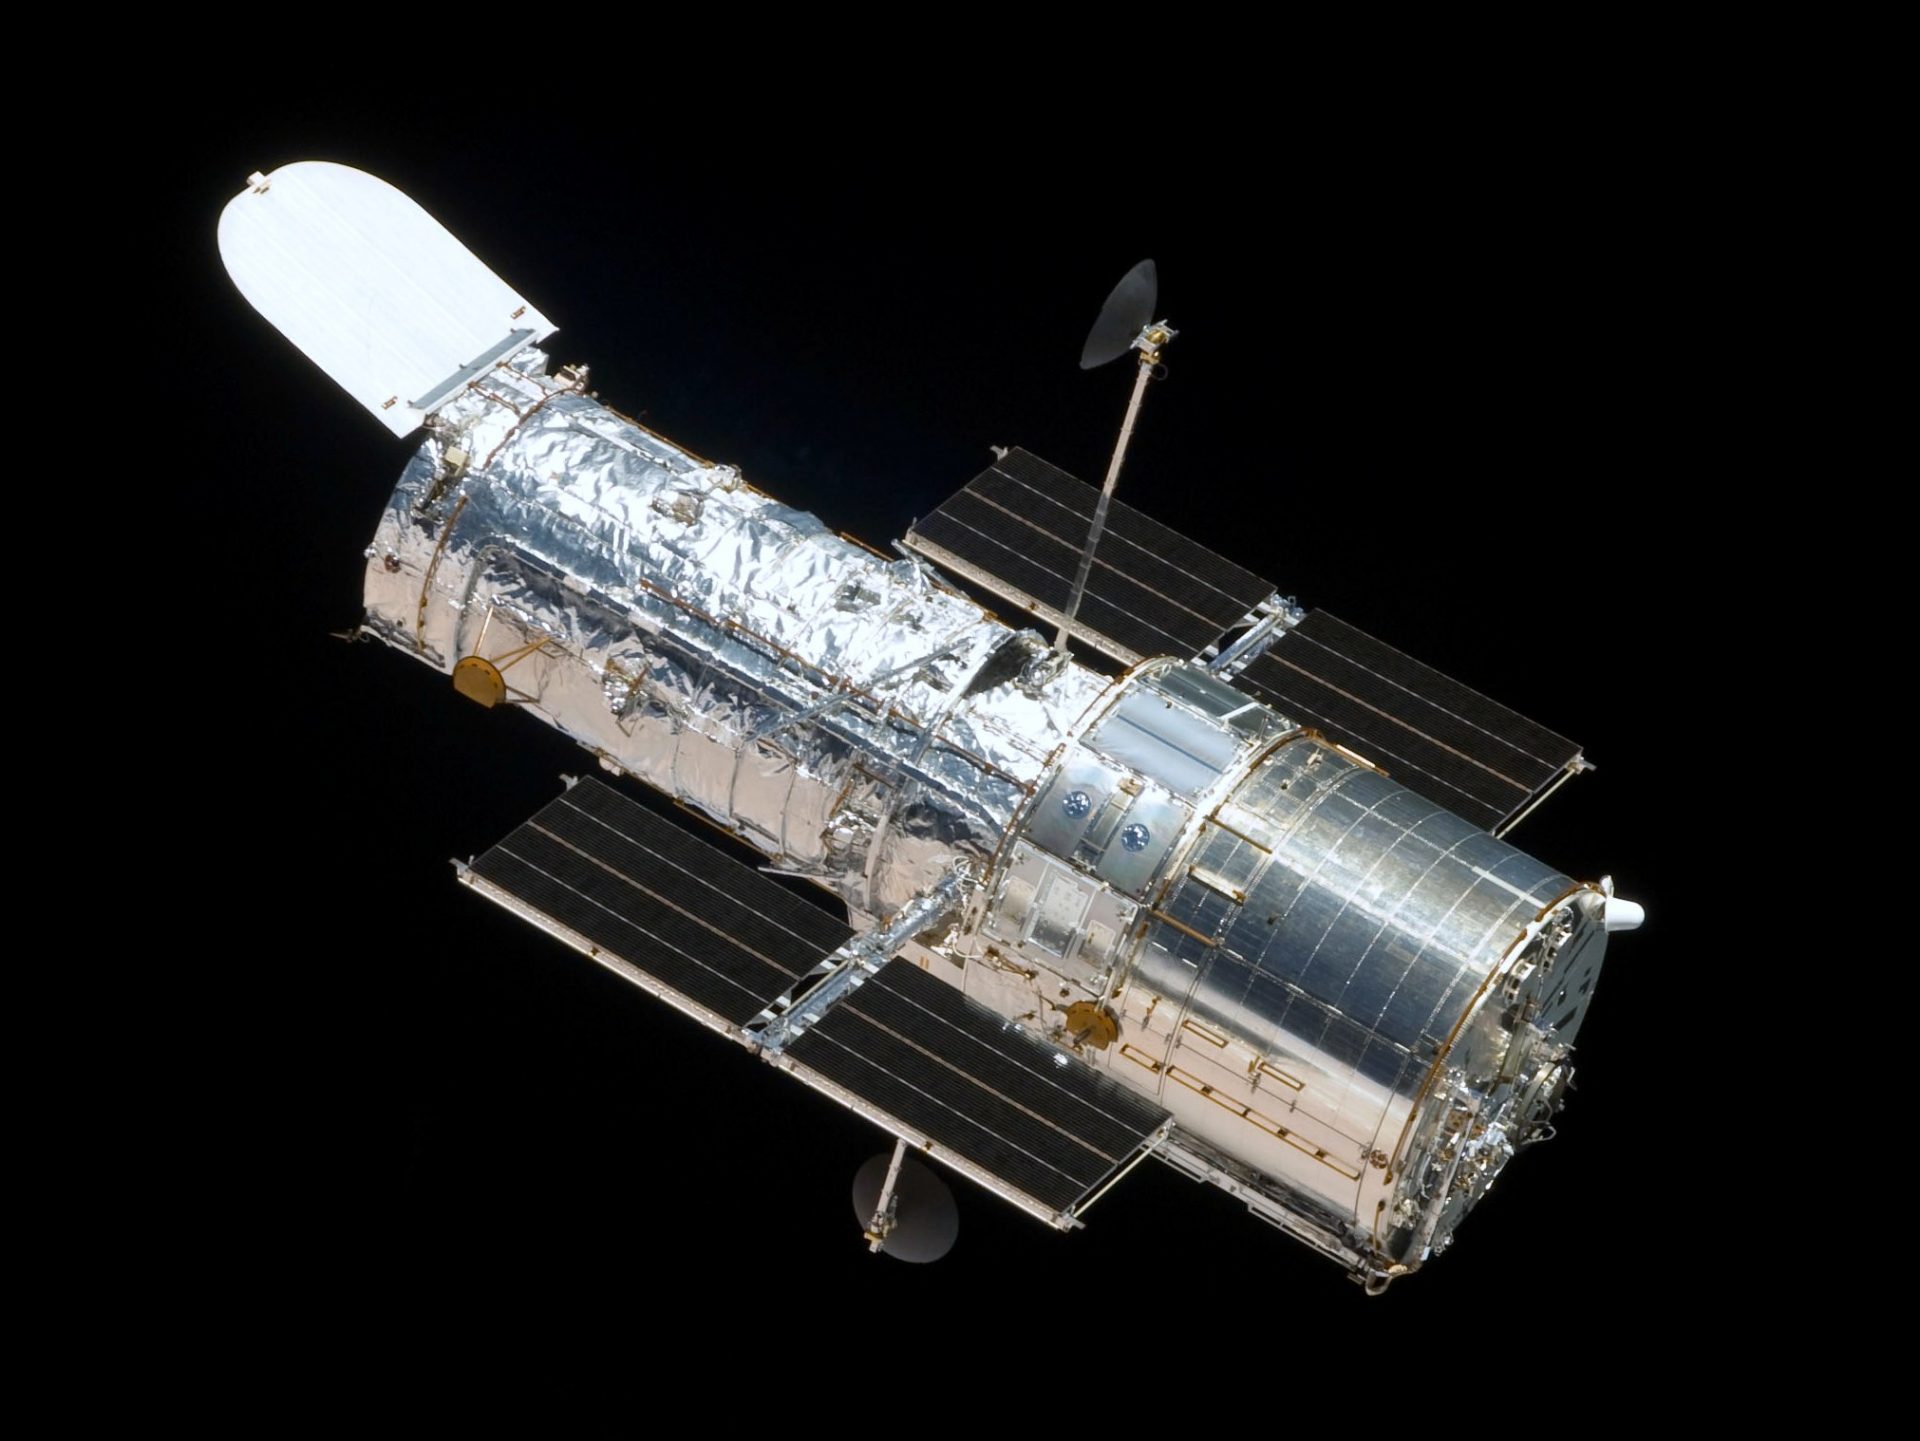 Telescopul Hubble